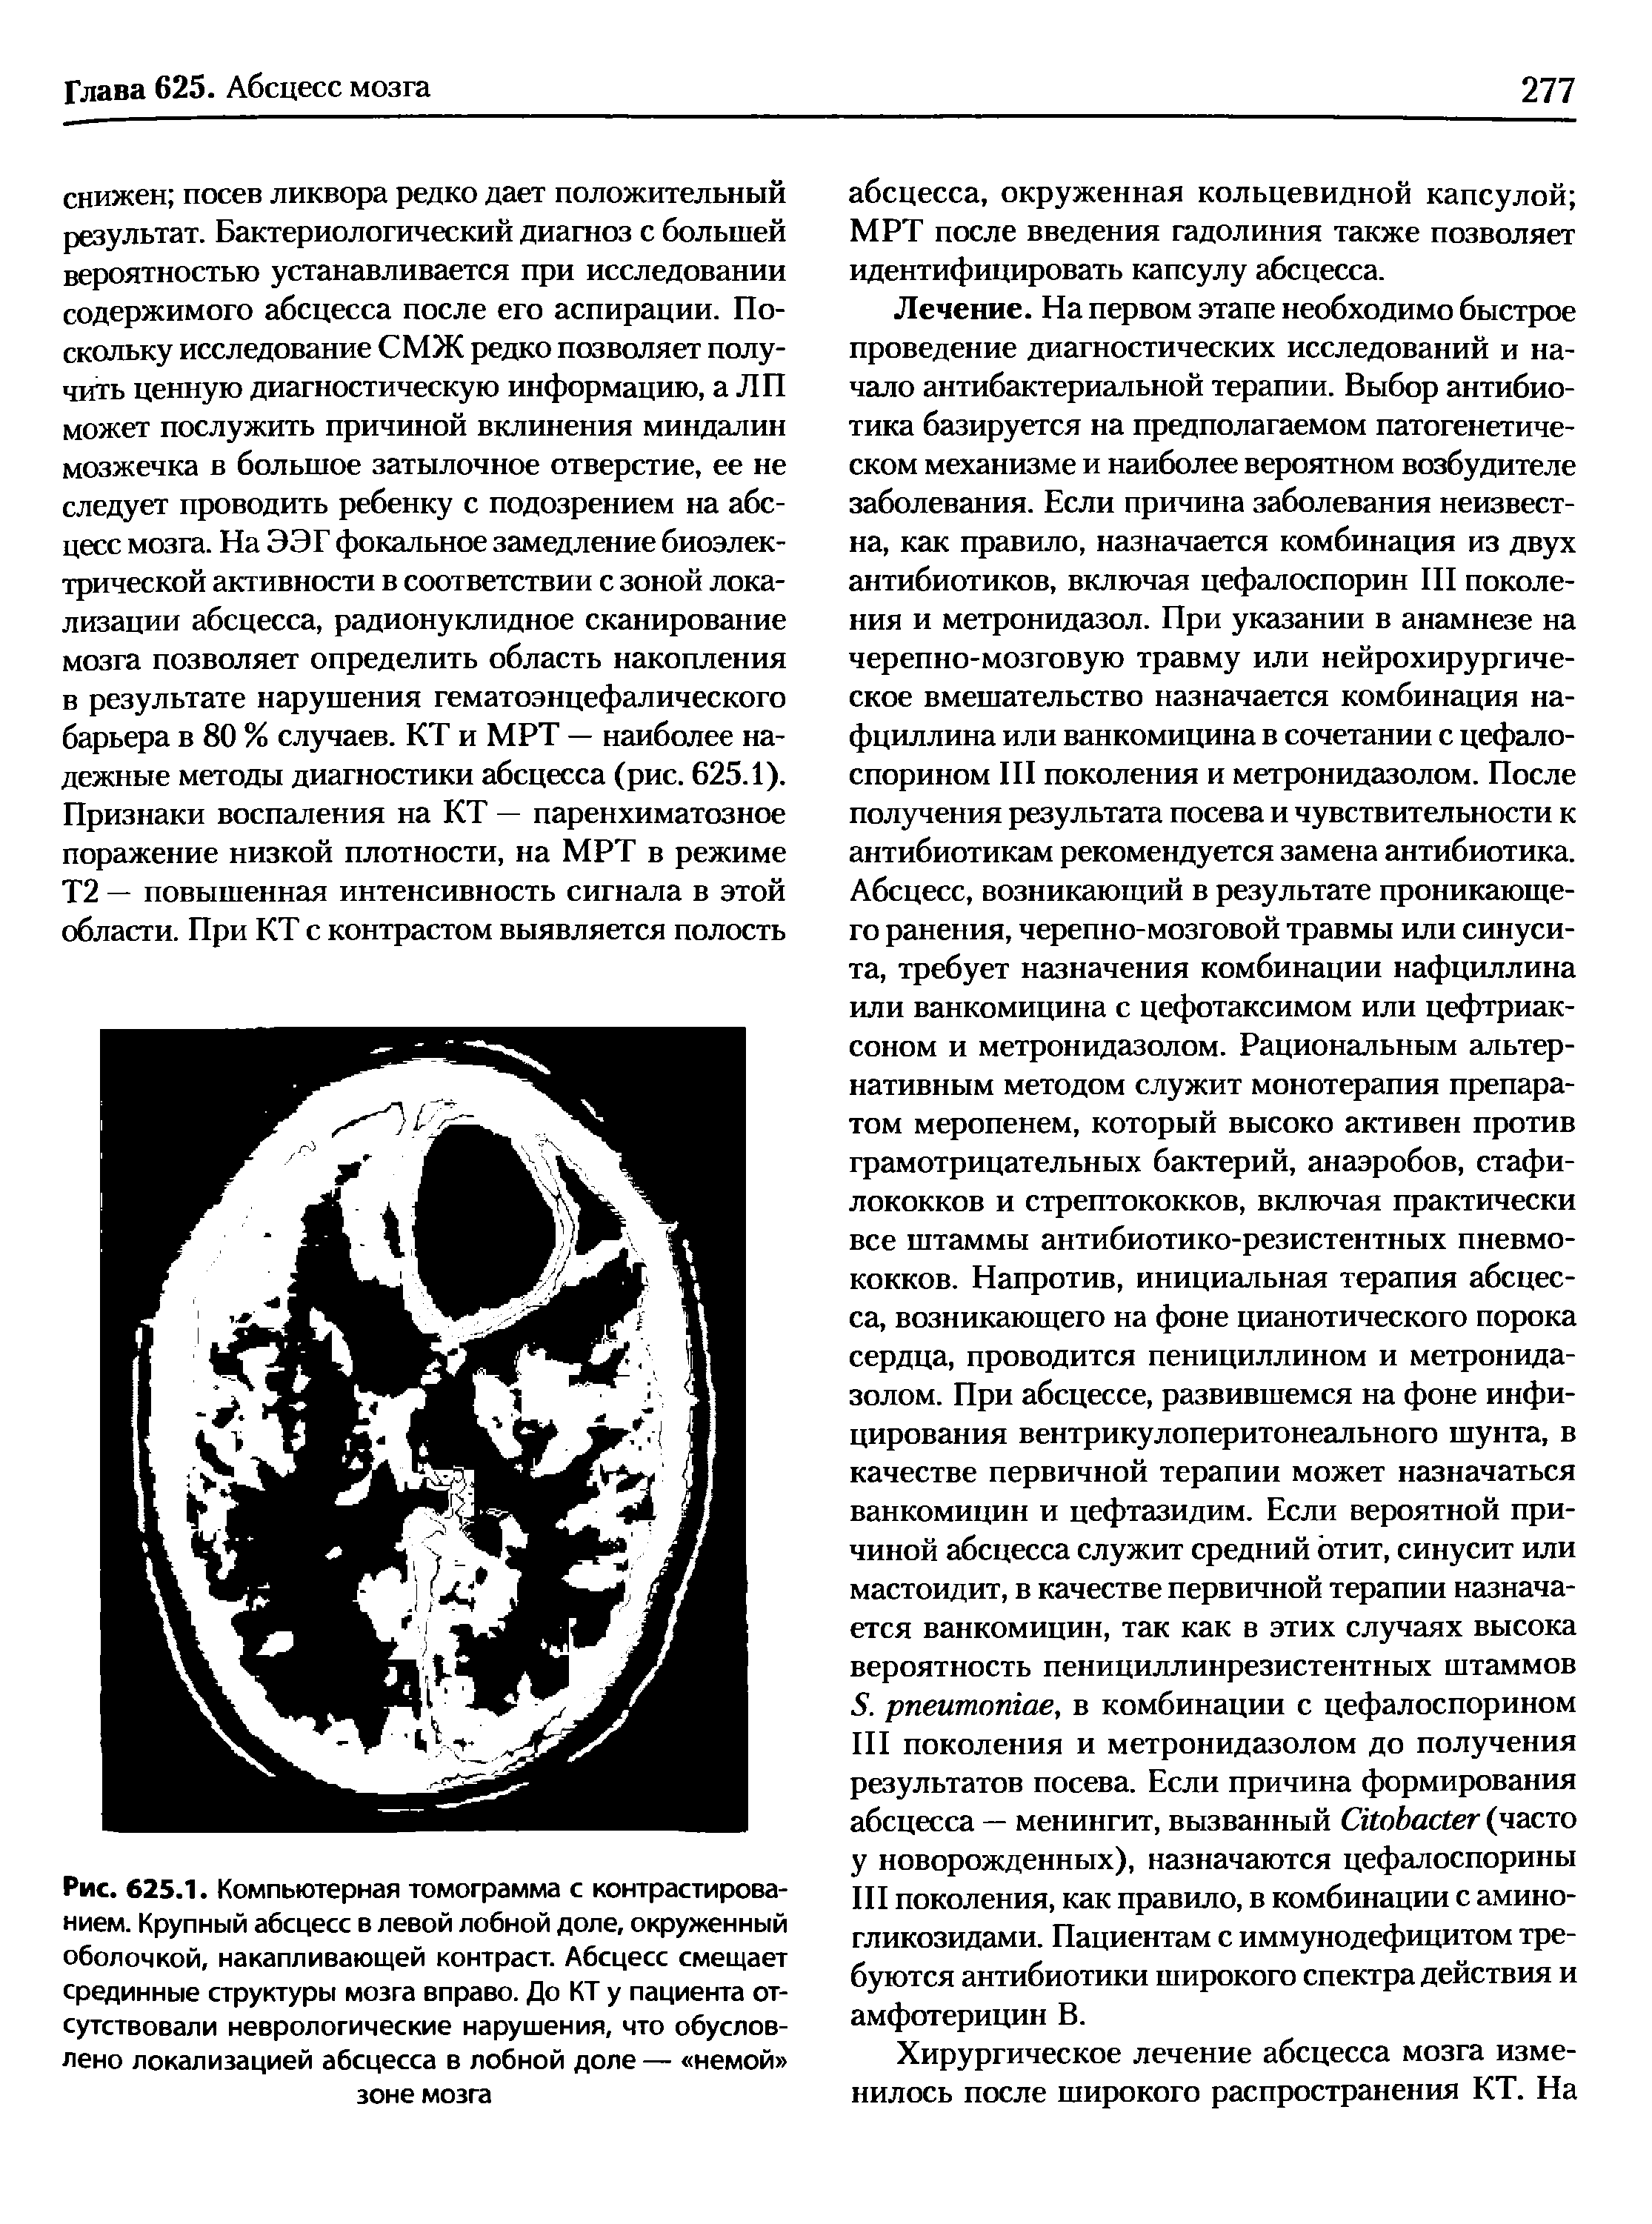 Рис. 625.1. Компьютерная томограмма с контрастированием. Крупный абсцесс в левой лобной доле, окруженный оболочкой, накапливающей контраст. Абсцесс смещает срединные структуры мозга вправо. До КТ у пациента отсутствовали неврологические нарушения, что обусловлено локализацией абсцесса в лобной доле — немой зоне мозга...